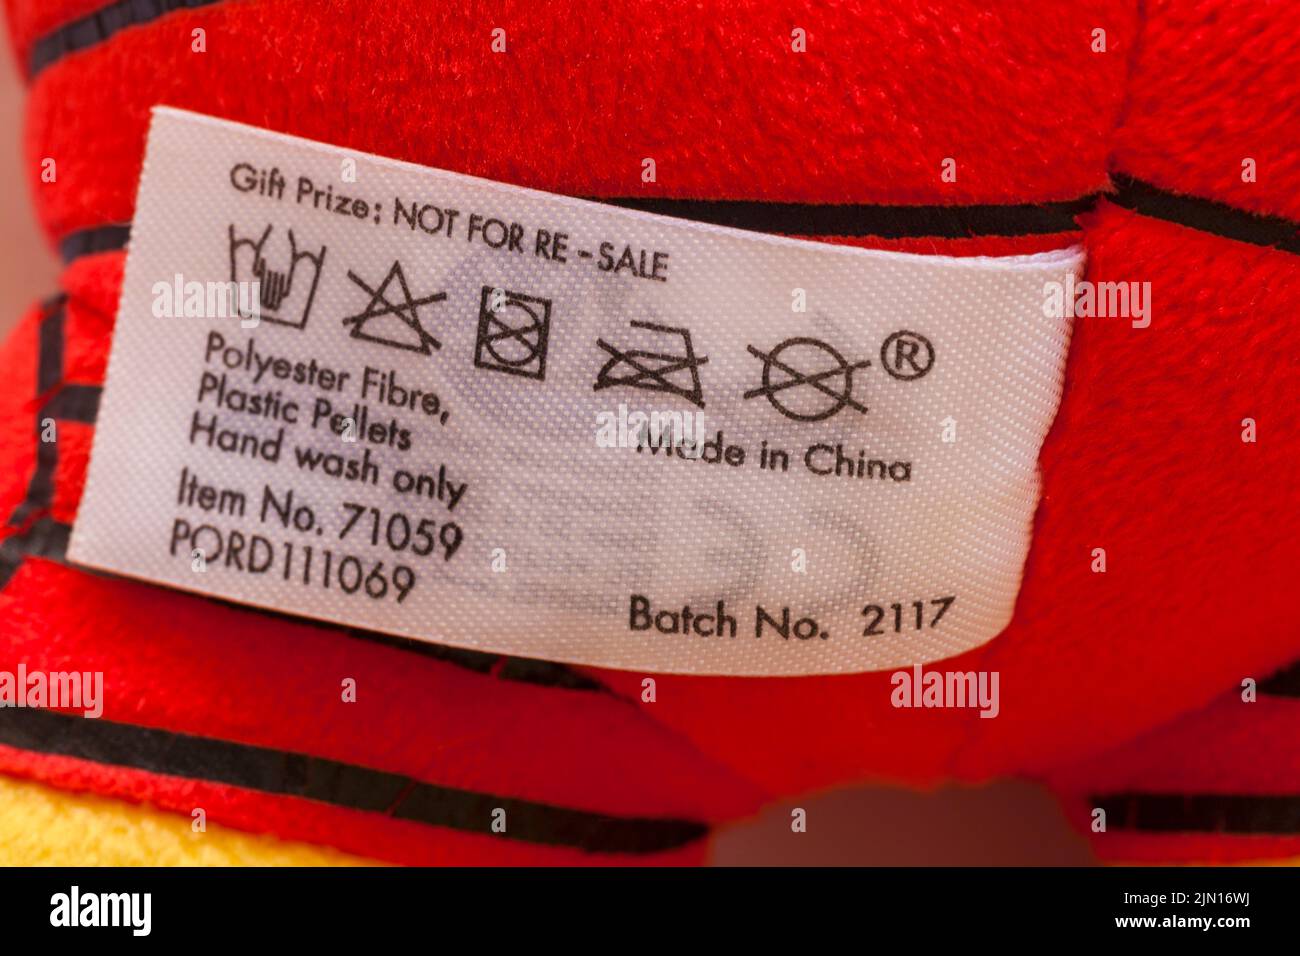 Fabricado en China pellets de plástico de fibra de poliéster Lavado a mano sólo instrucciones de limpieza de lavado de etiquetas en la etiqueta de Marvel Iron Man peluche suave Foto de stock